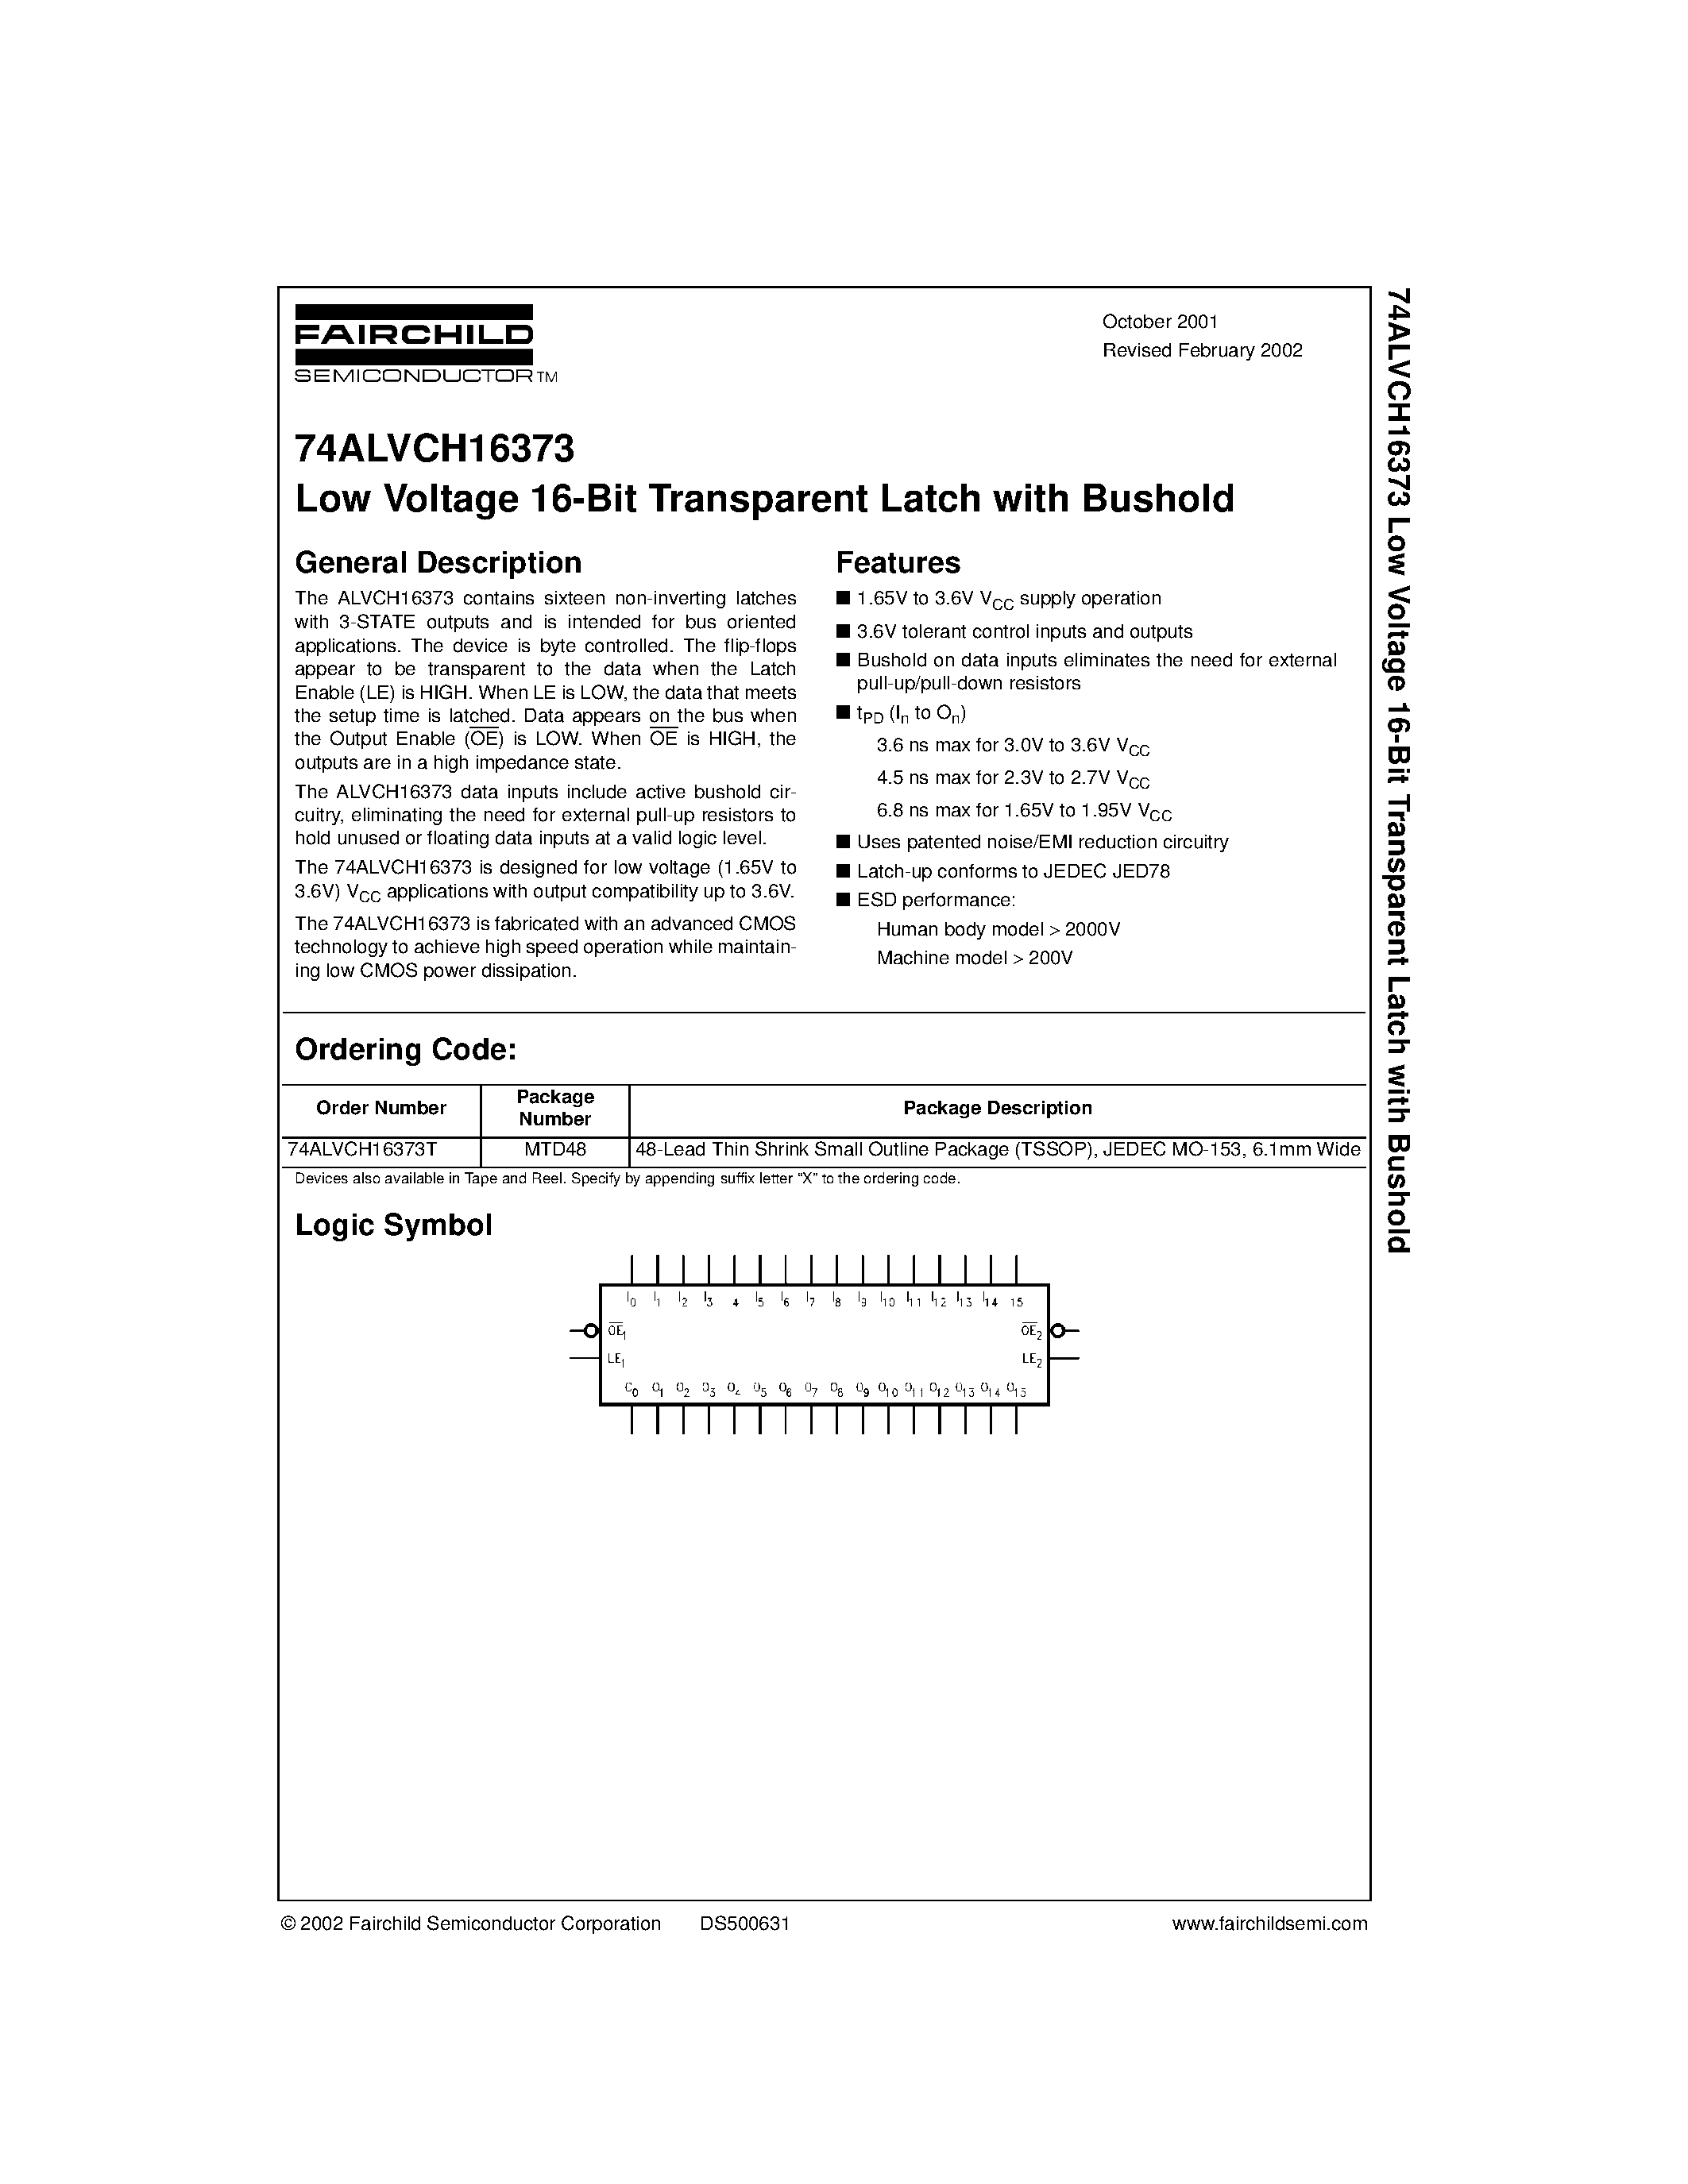 Даташит 74ALVCH16373T - Low Voltage 16-Bit Transparent Latch with Bushold страница 1